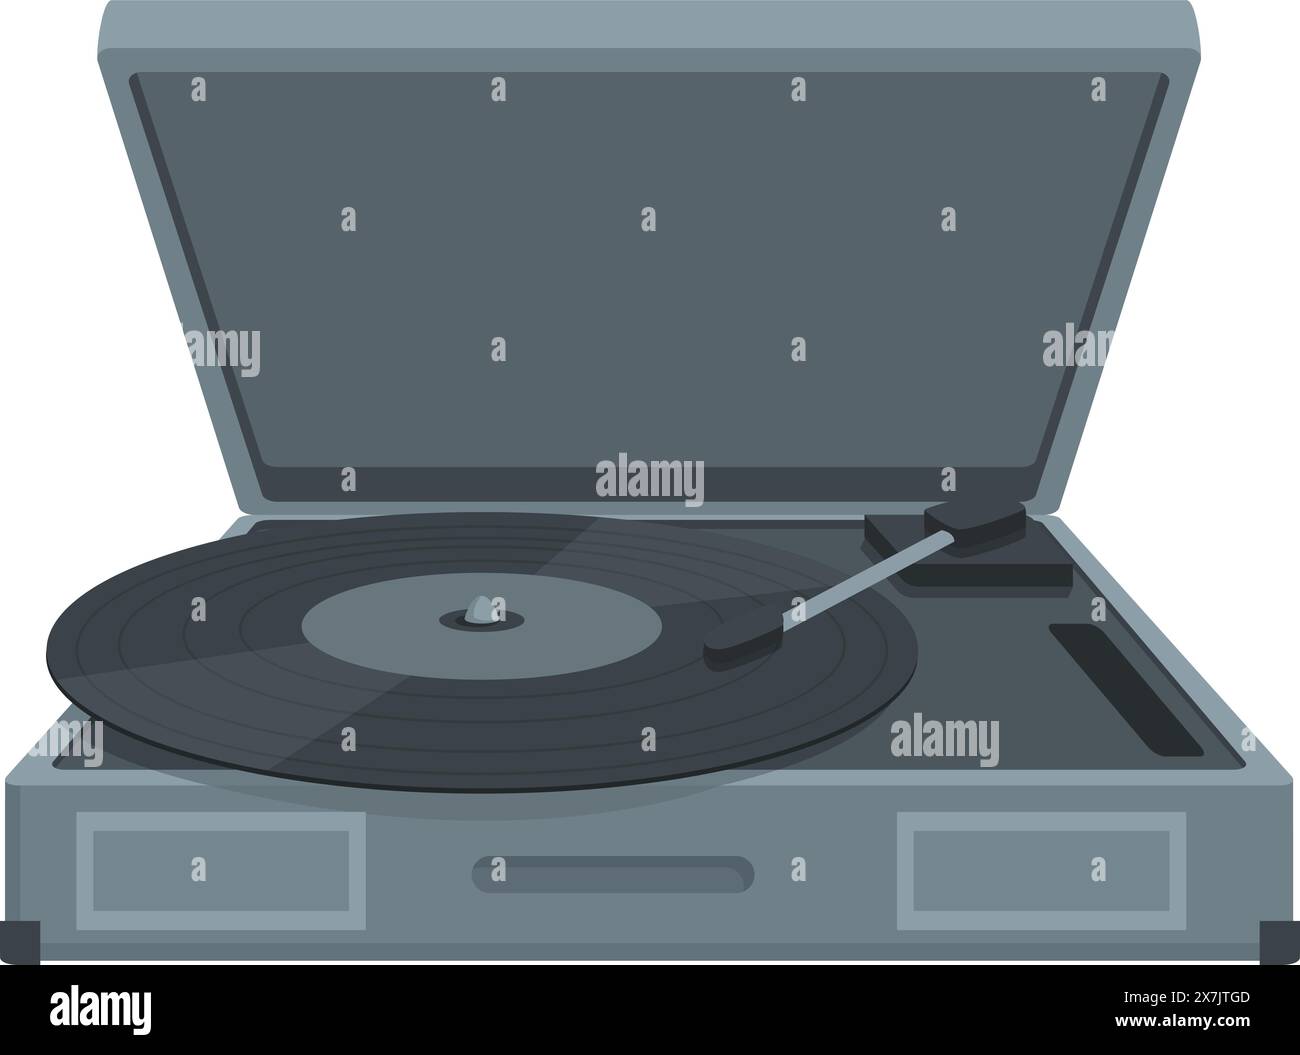 Illustrazione a cartoni animati ispirata a VintageMove di un lettore di dischi stereo in vinile minimalista con giradischi, perfetto per gli amanti della musica e dell'intrattenimento rétro Illustrazione Vettoriale